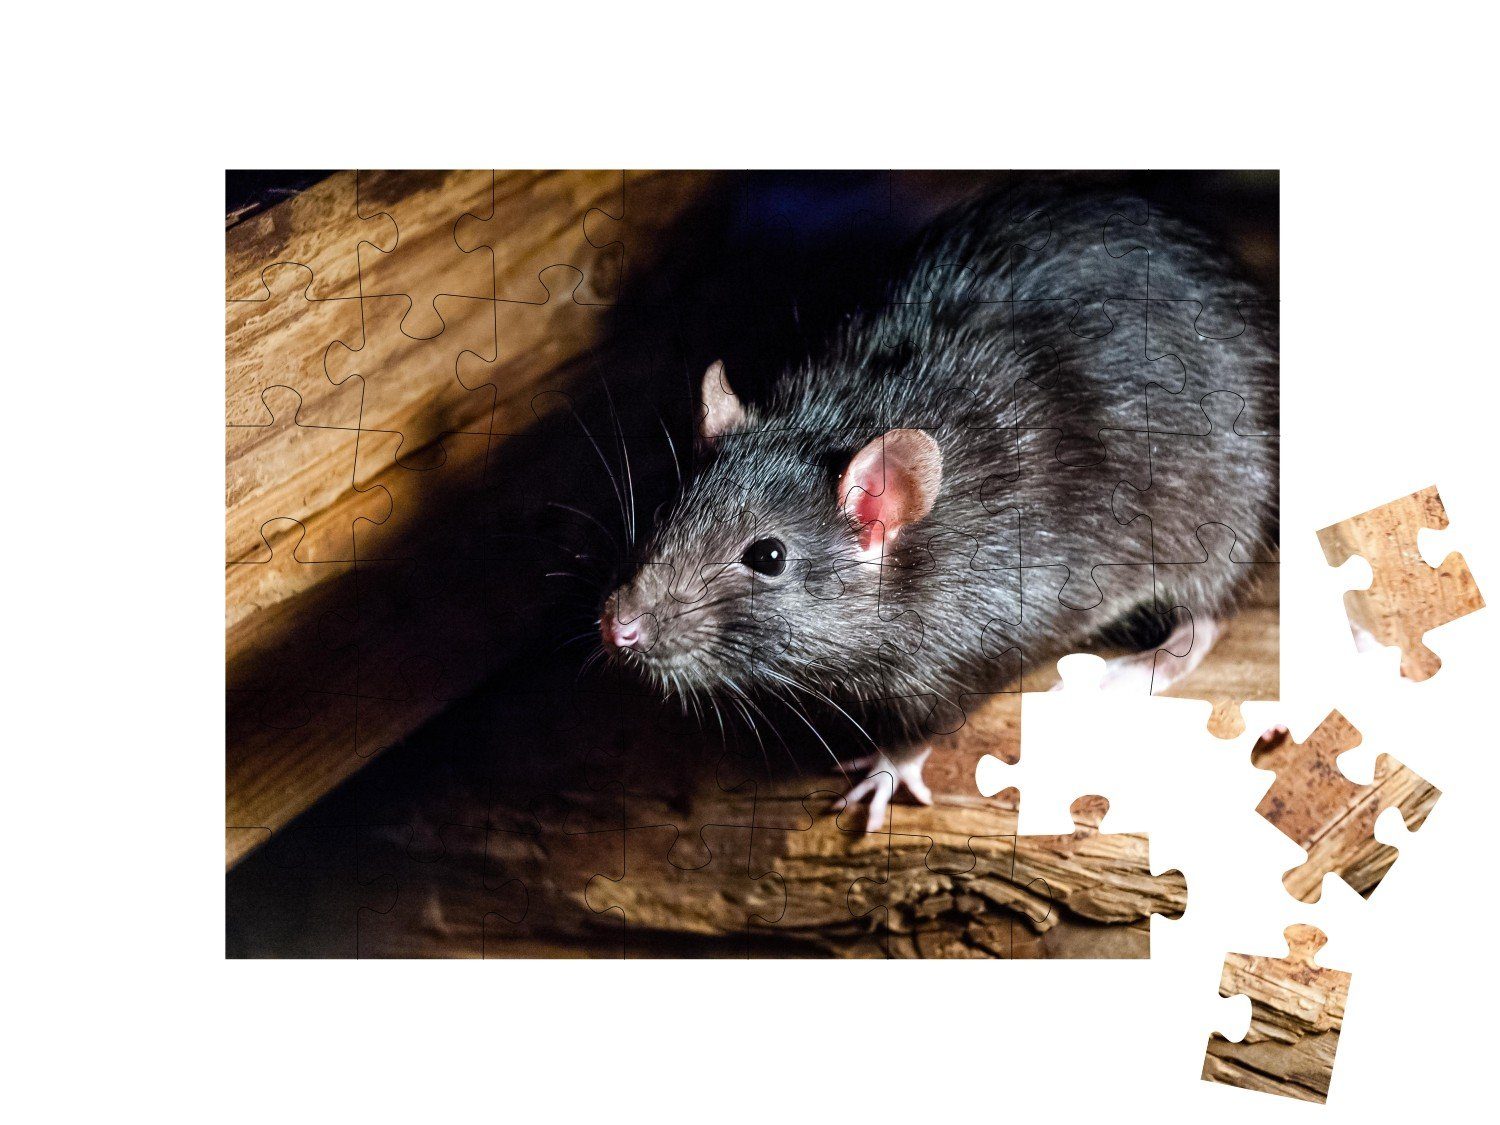 48 puzzleYOU Insekten Ratte, als Mäuse, Die auch Puzzleteile, Hausratte, puzzleYOU-Kollektionen schwarze & Kleintiere Puzzle bekannt